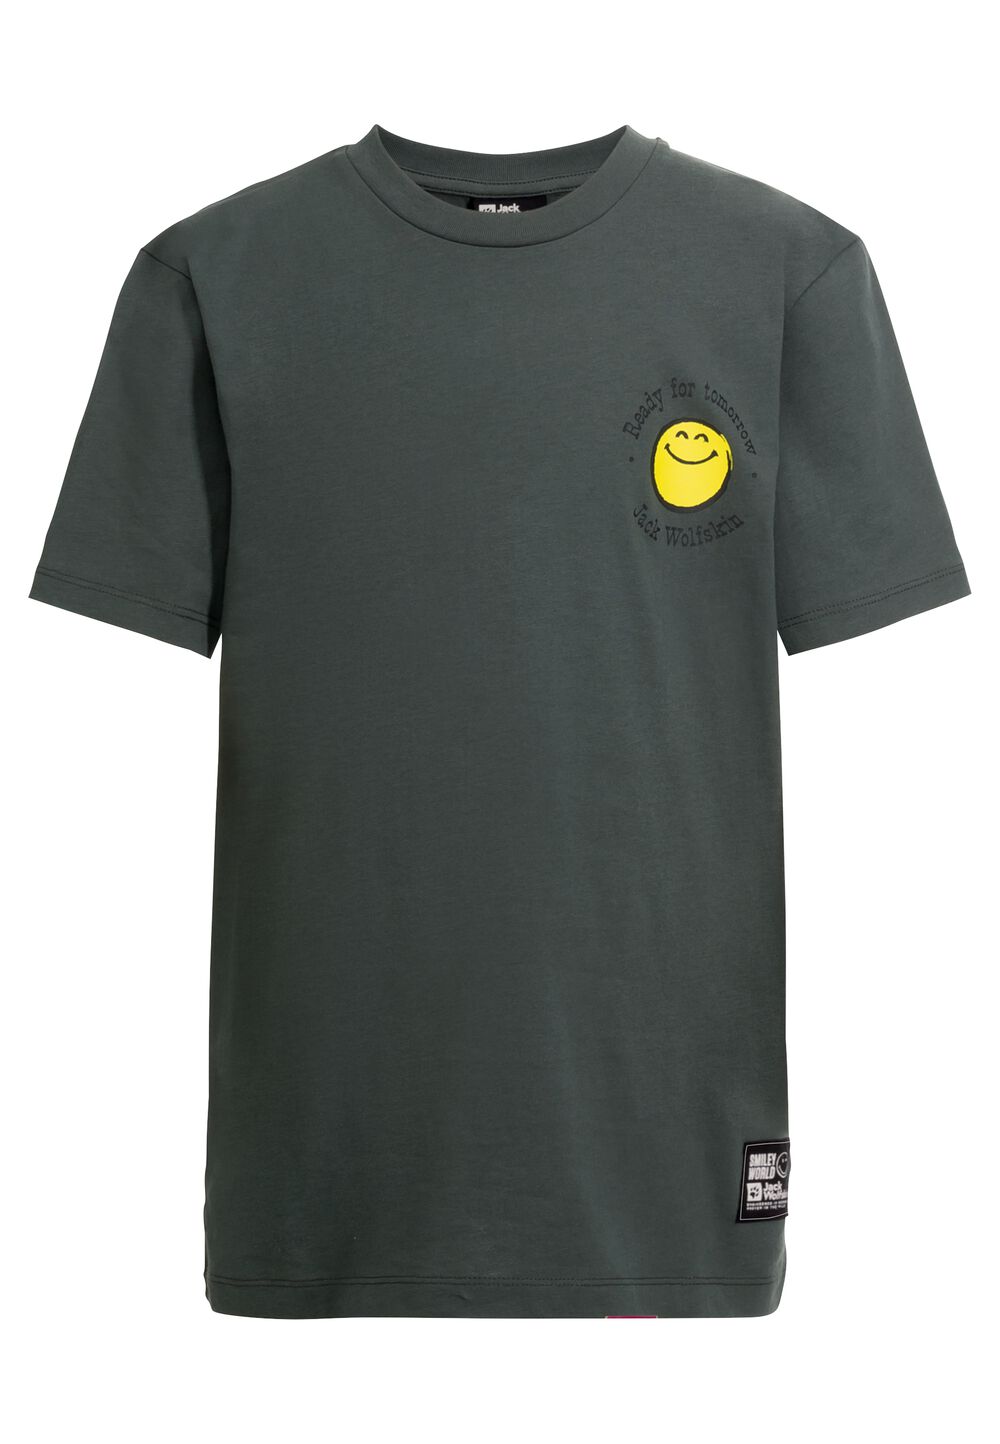 Jack Wolfskin Smileyworld T-Shirt Youth T-shirt van biologisch katoen tieners 140 grijs slate green